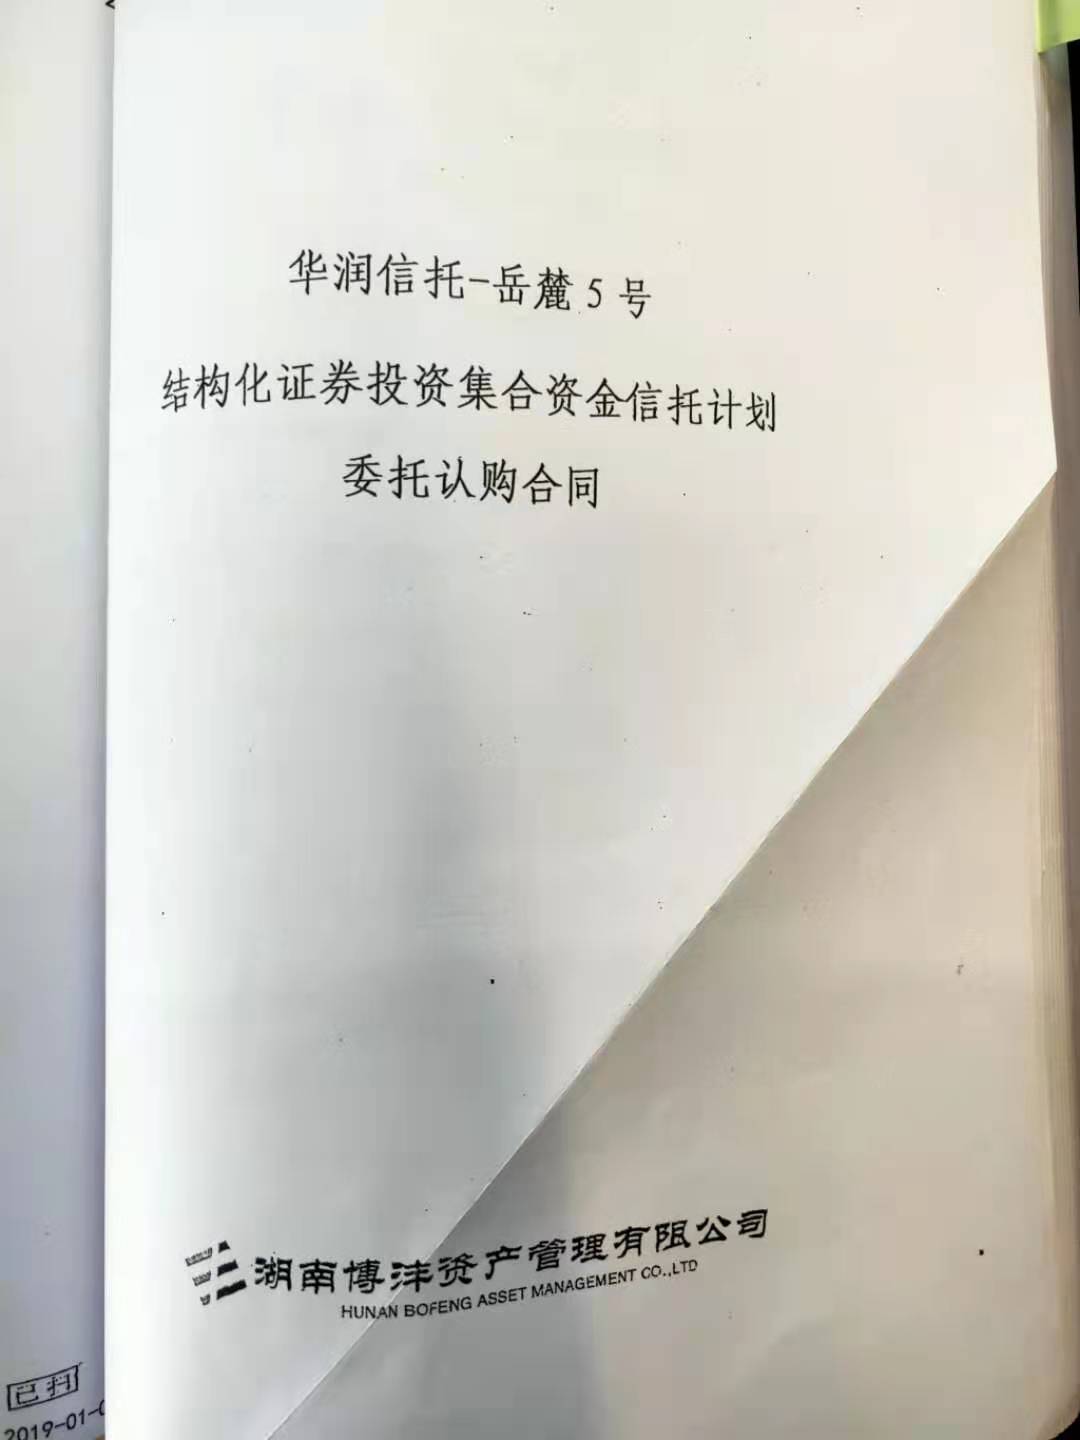 郑州启阳公司90后员工出志愿减班被个人扣一个月绩效